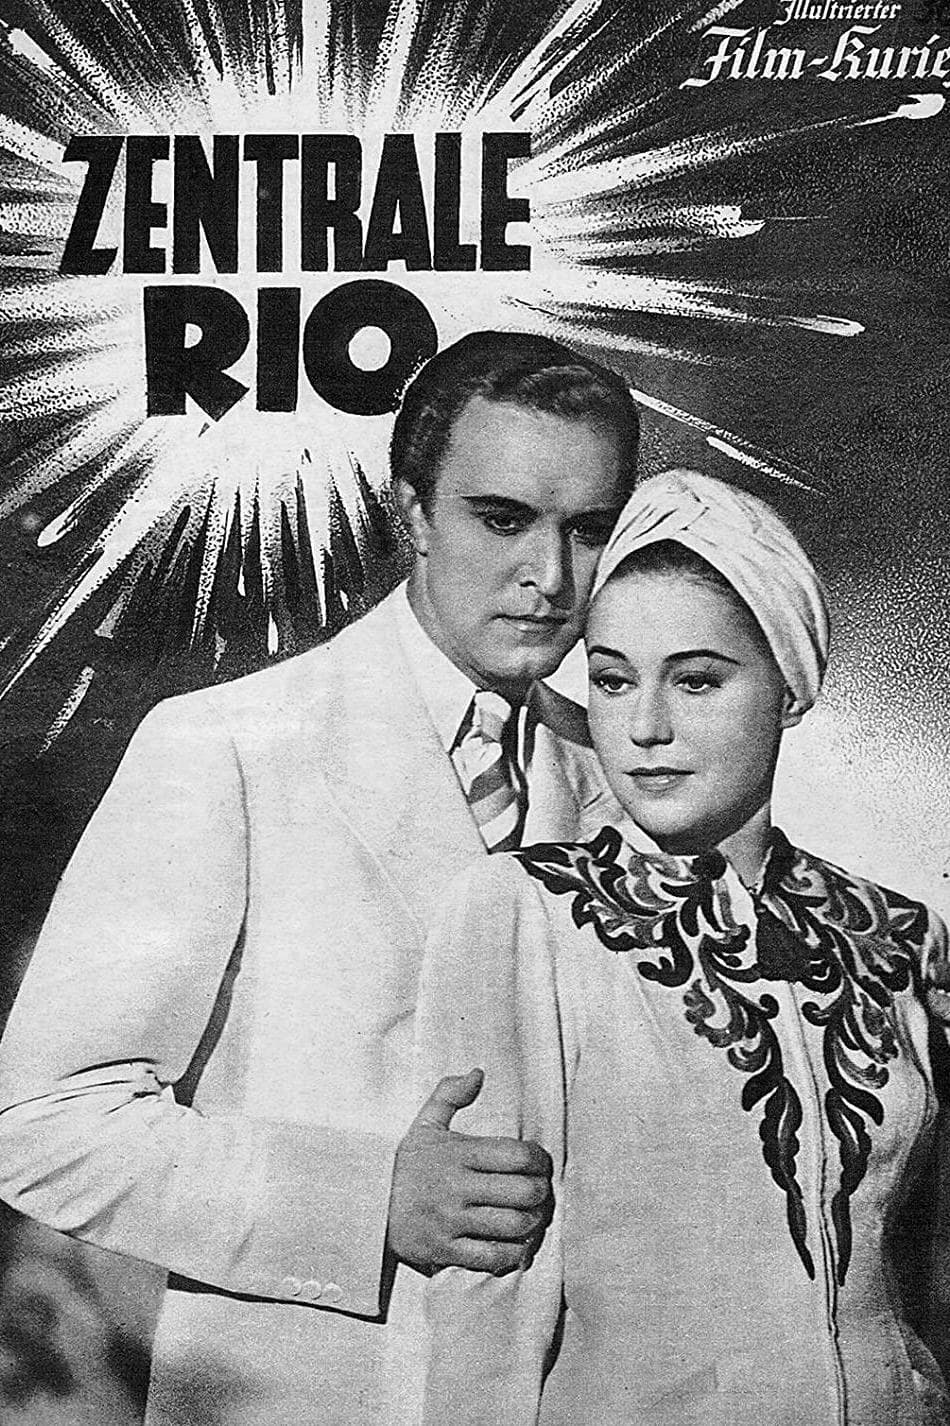 Zentrale Rio (1939)